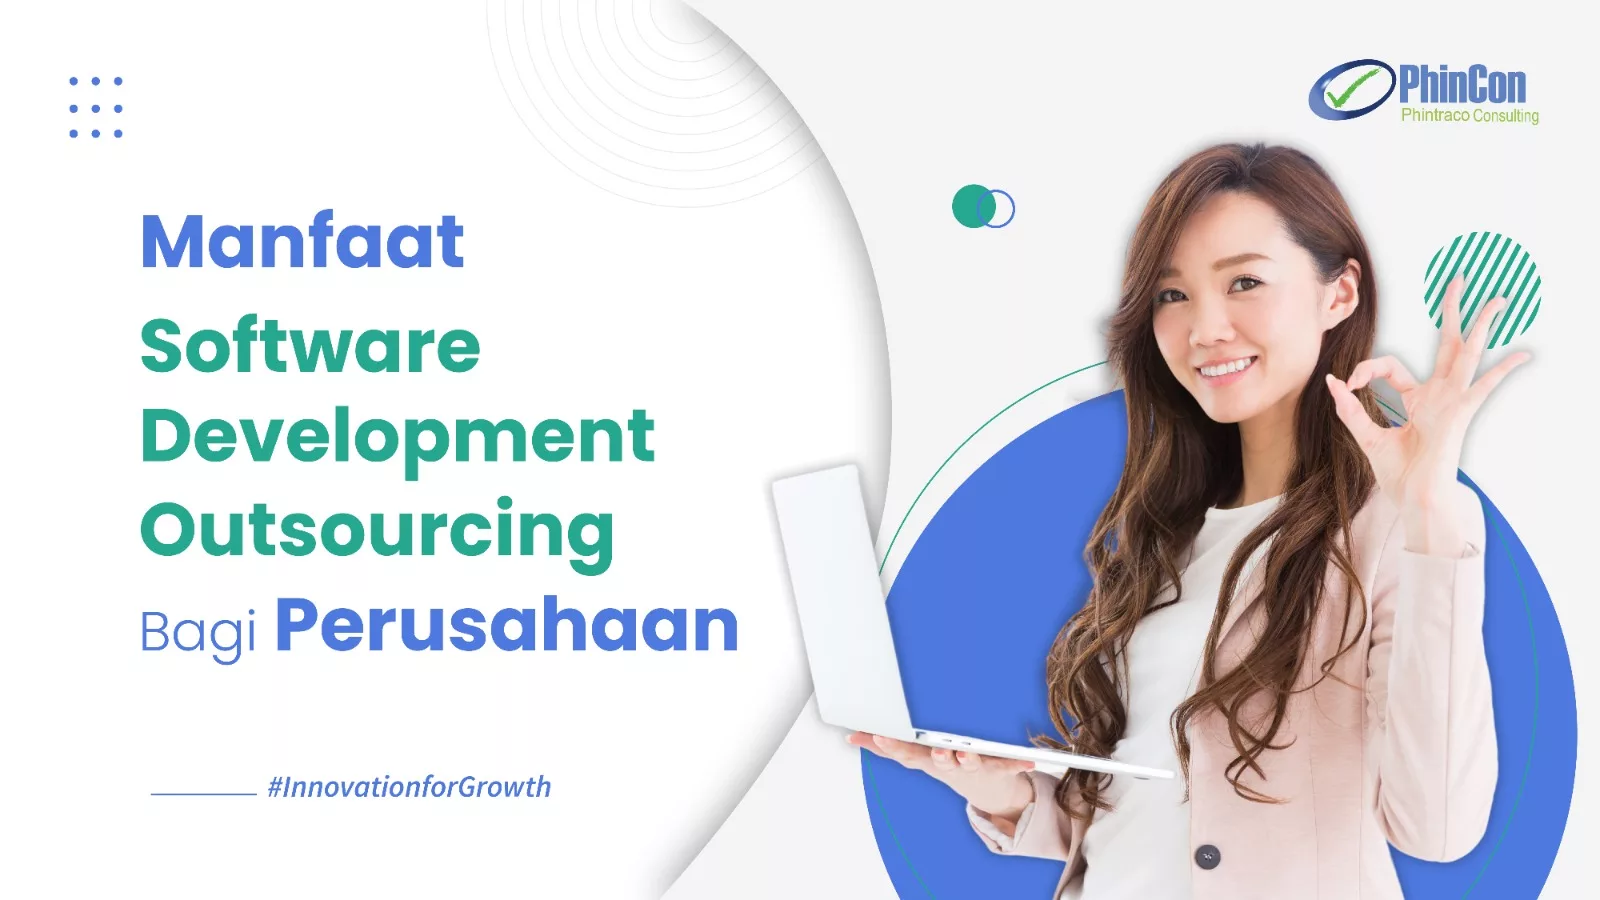 Manfaat Software Development Outsourcing Bagi Perusahaan